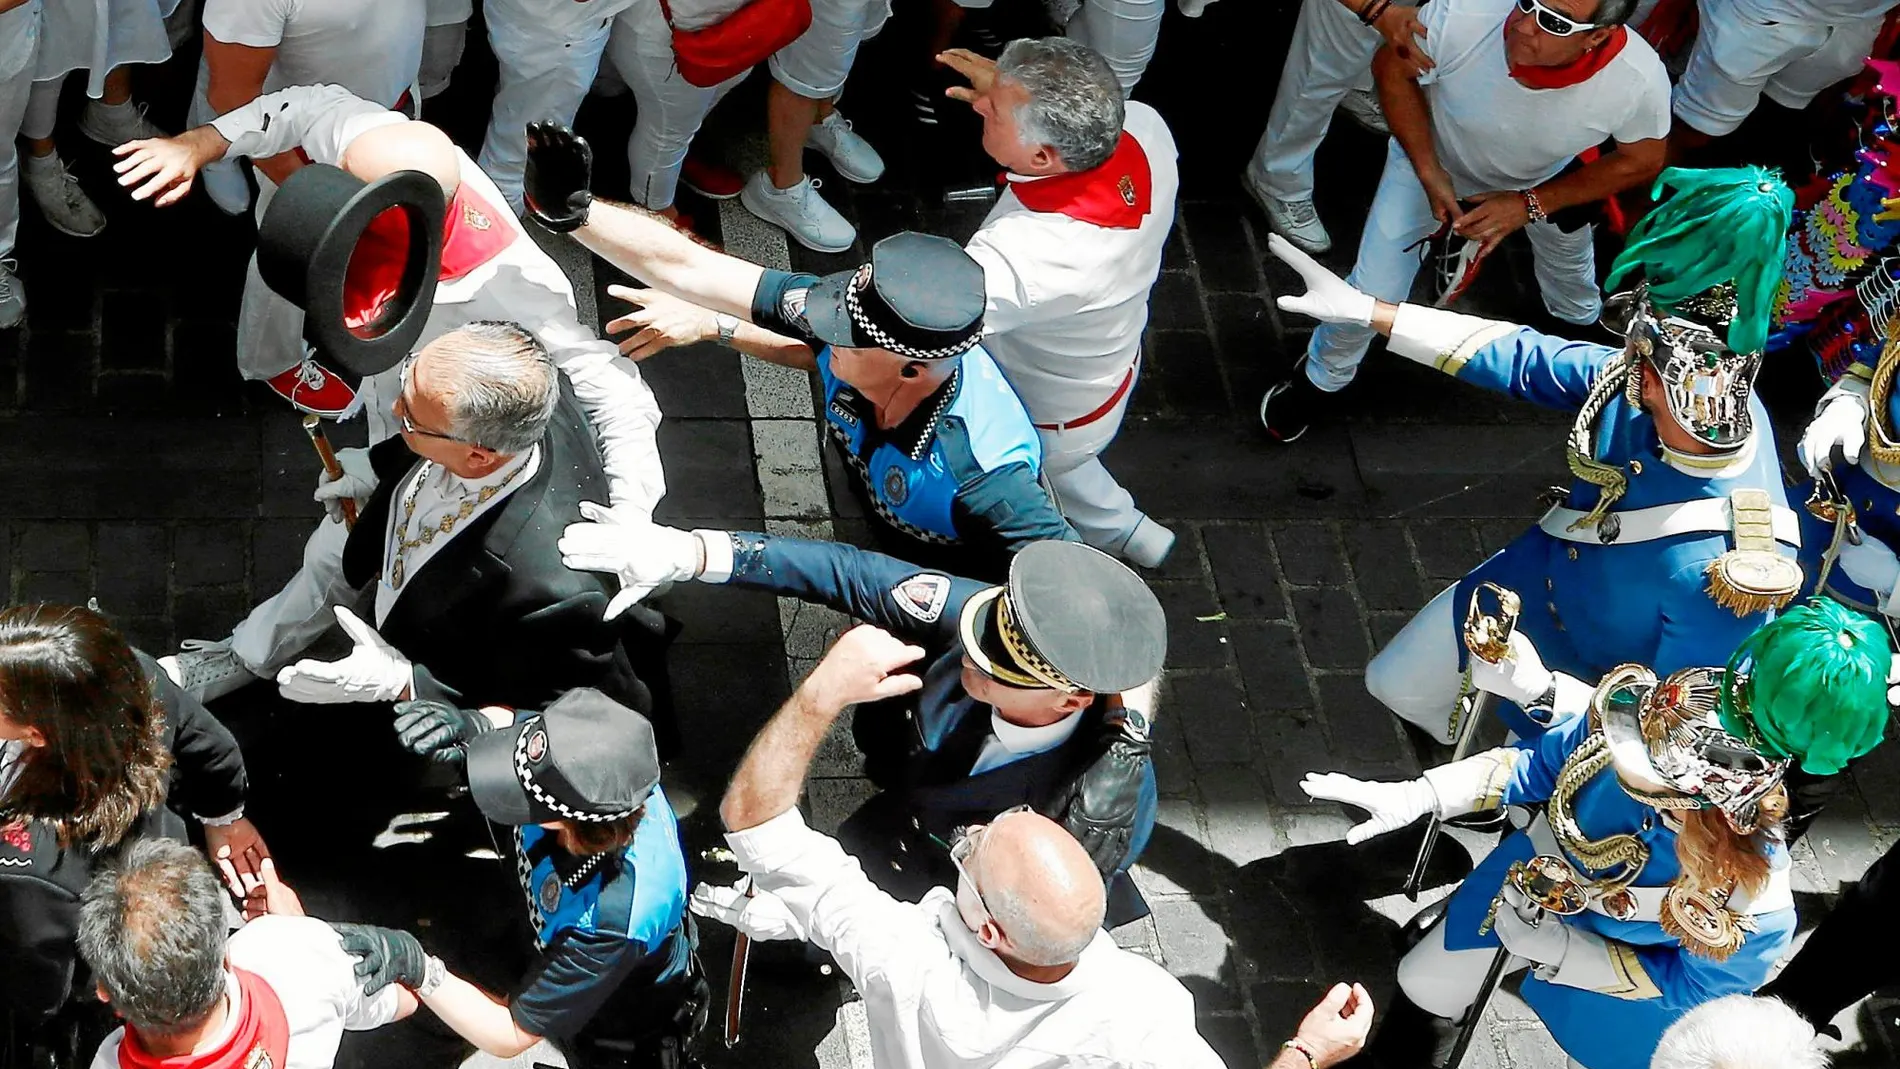 Momentos de tensión al paso de la corporación municipal. Agentes de la Policía Municipal protegen al alcalde, Enrique Maya